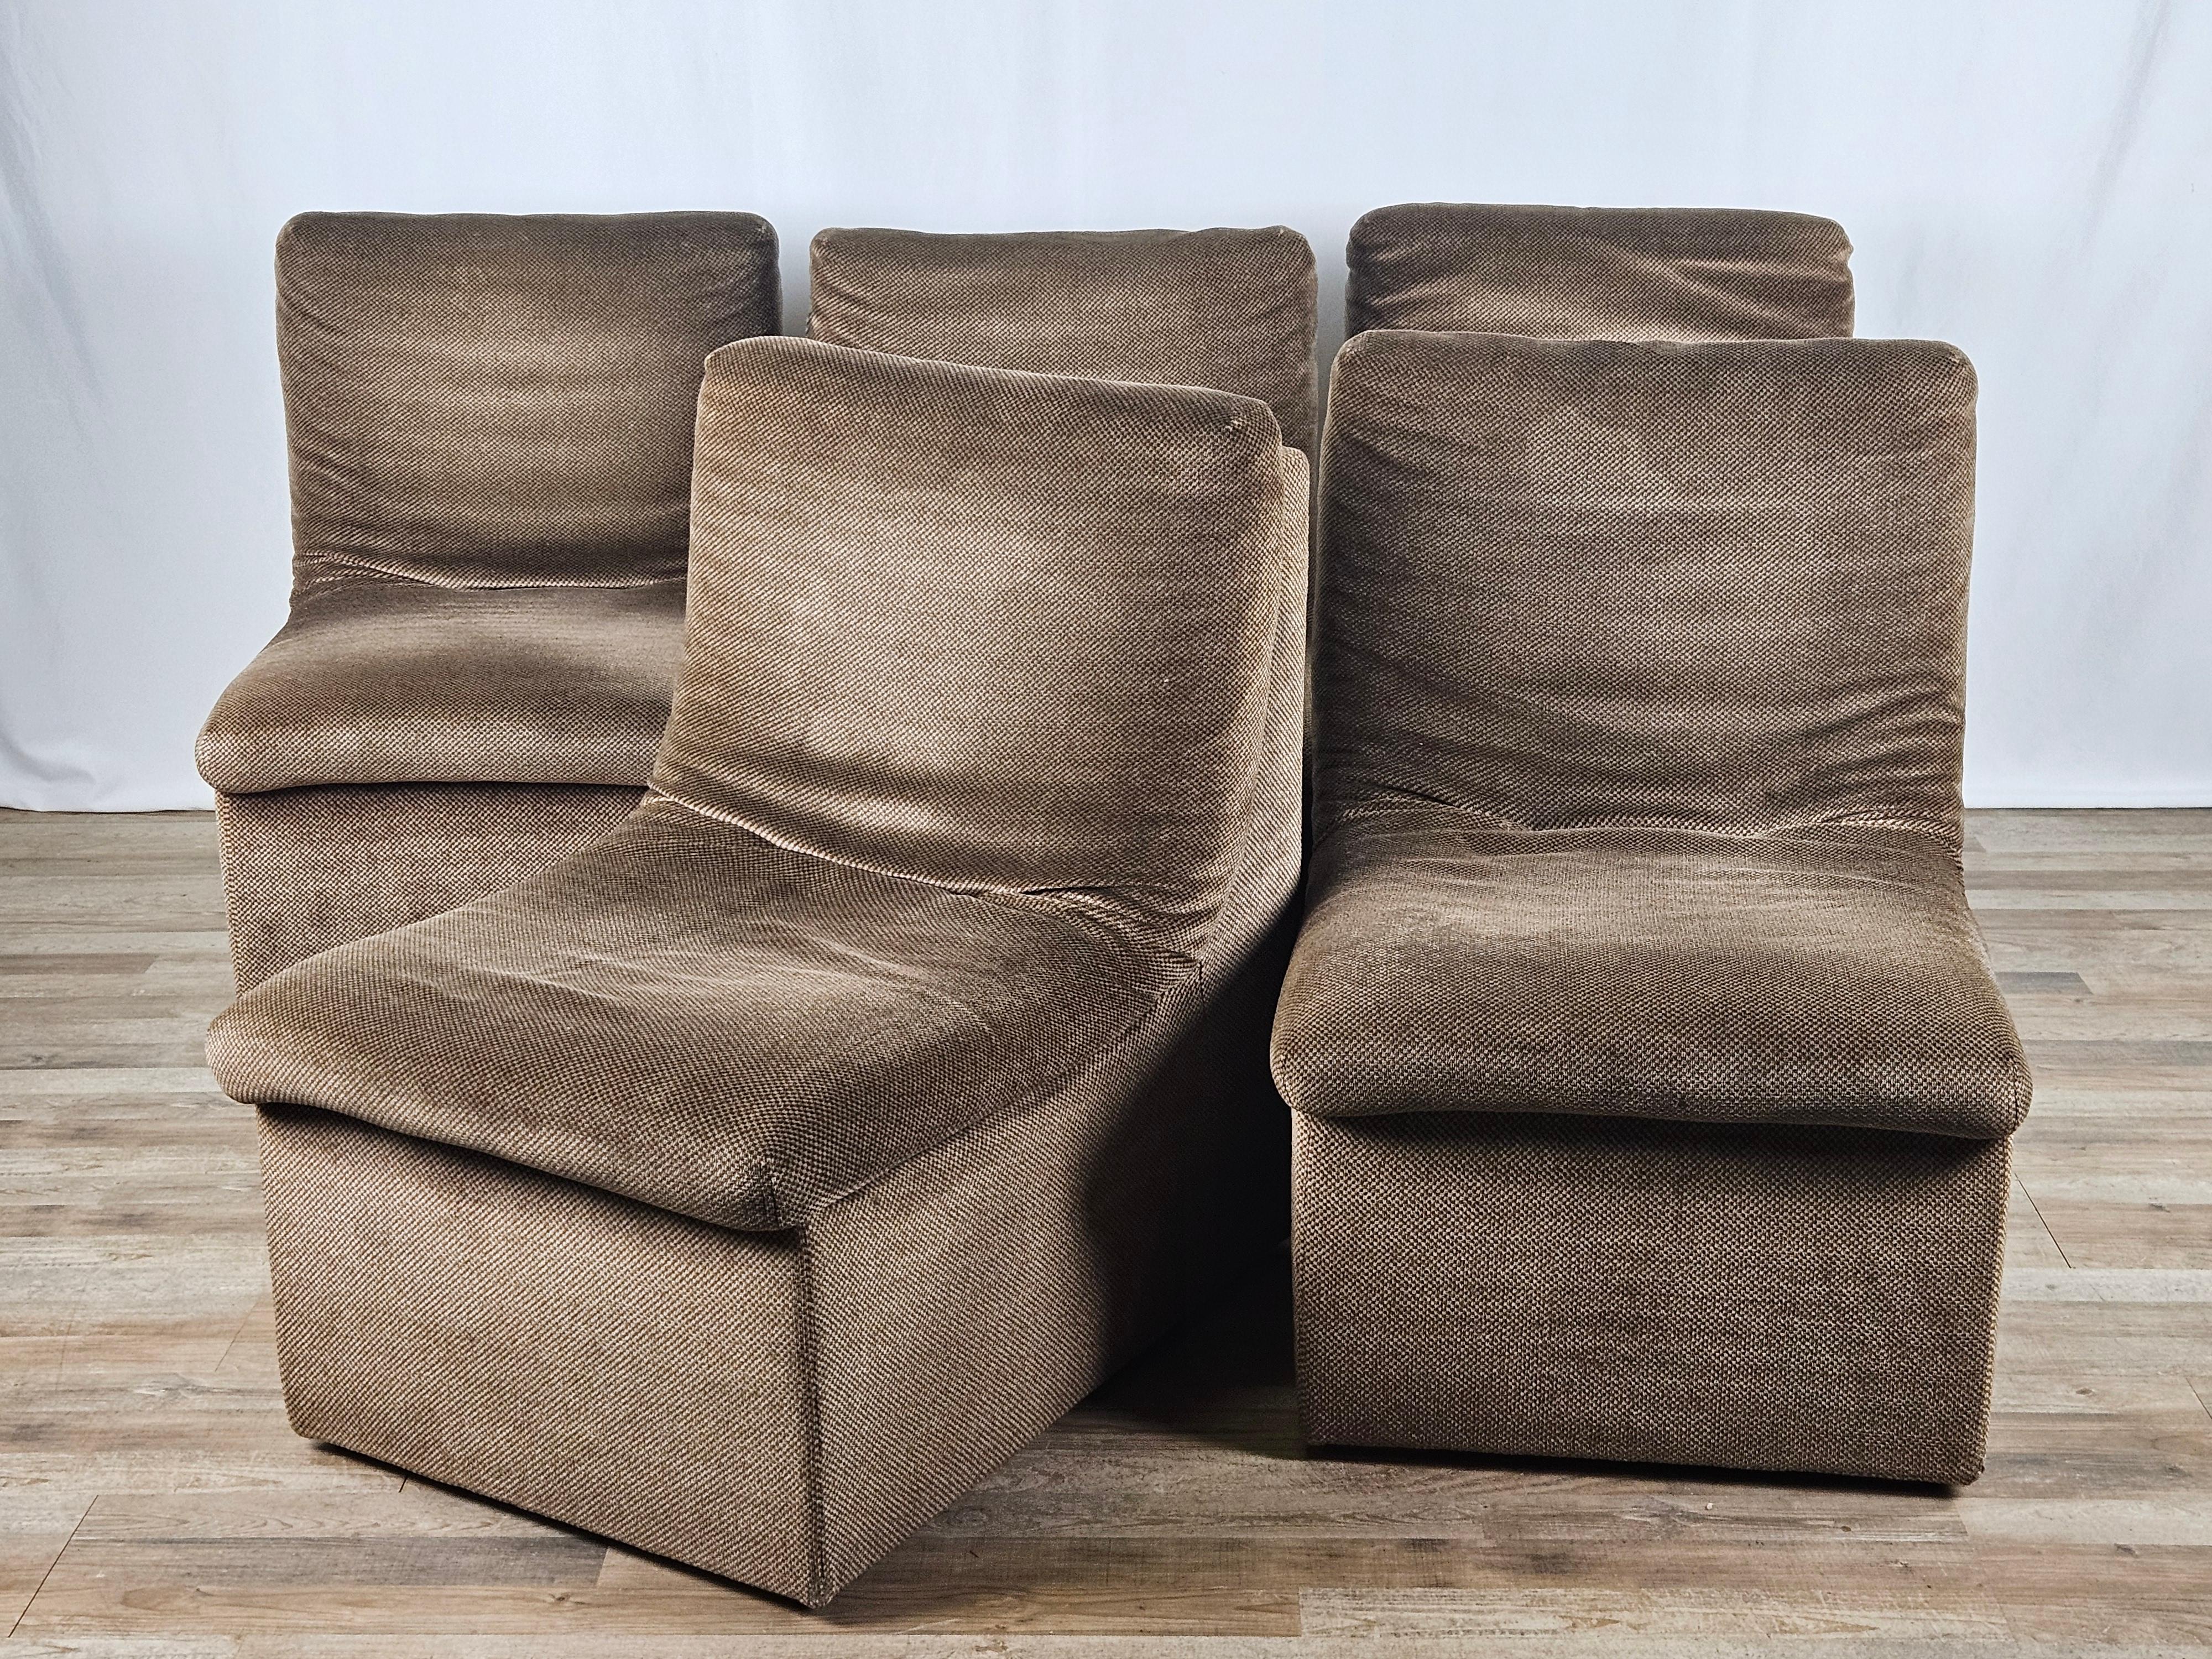 Satz von fünf modularen Stoffstühlen mit Holzfüßen, italienisches Design aus den frühen 1970er Jahren.

Die Stühle können nebeneinander gestellt oder einzeln verwendet werden, um eine Lounge, ein Wartezimmer in einem professionellen Studio oder als